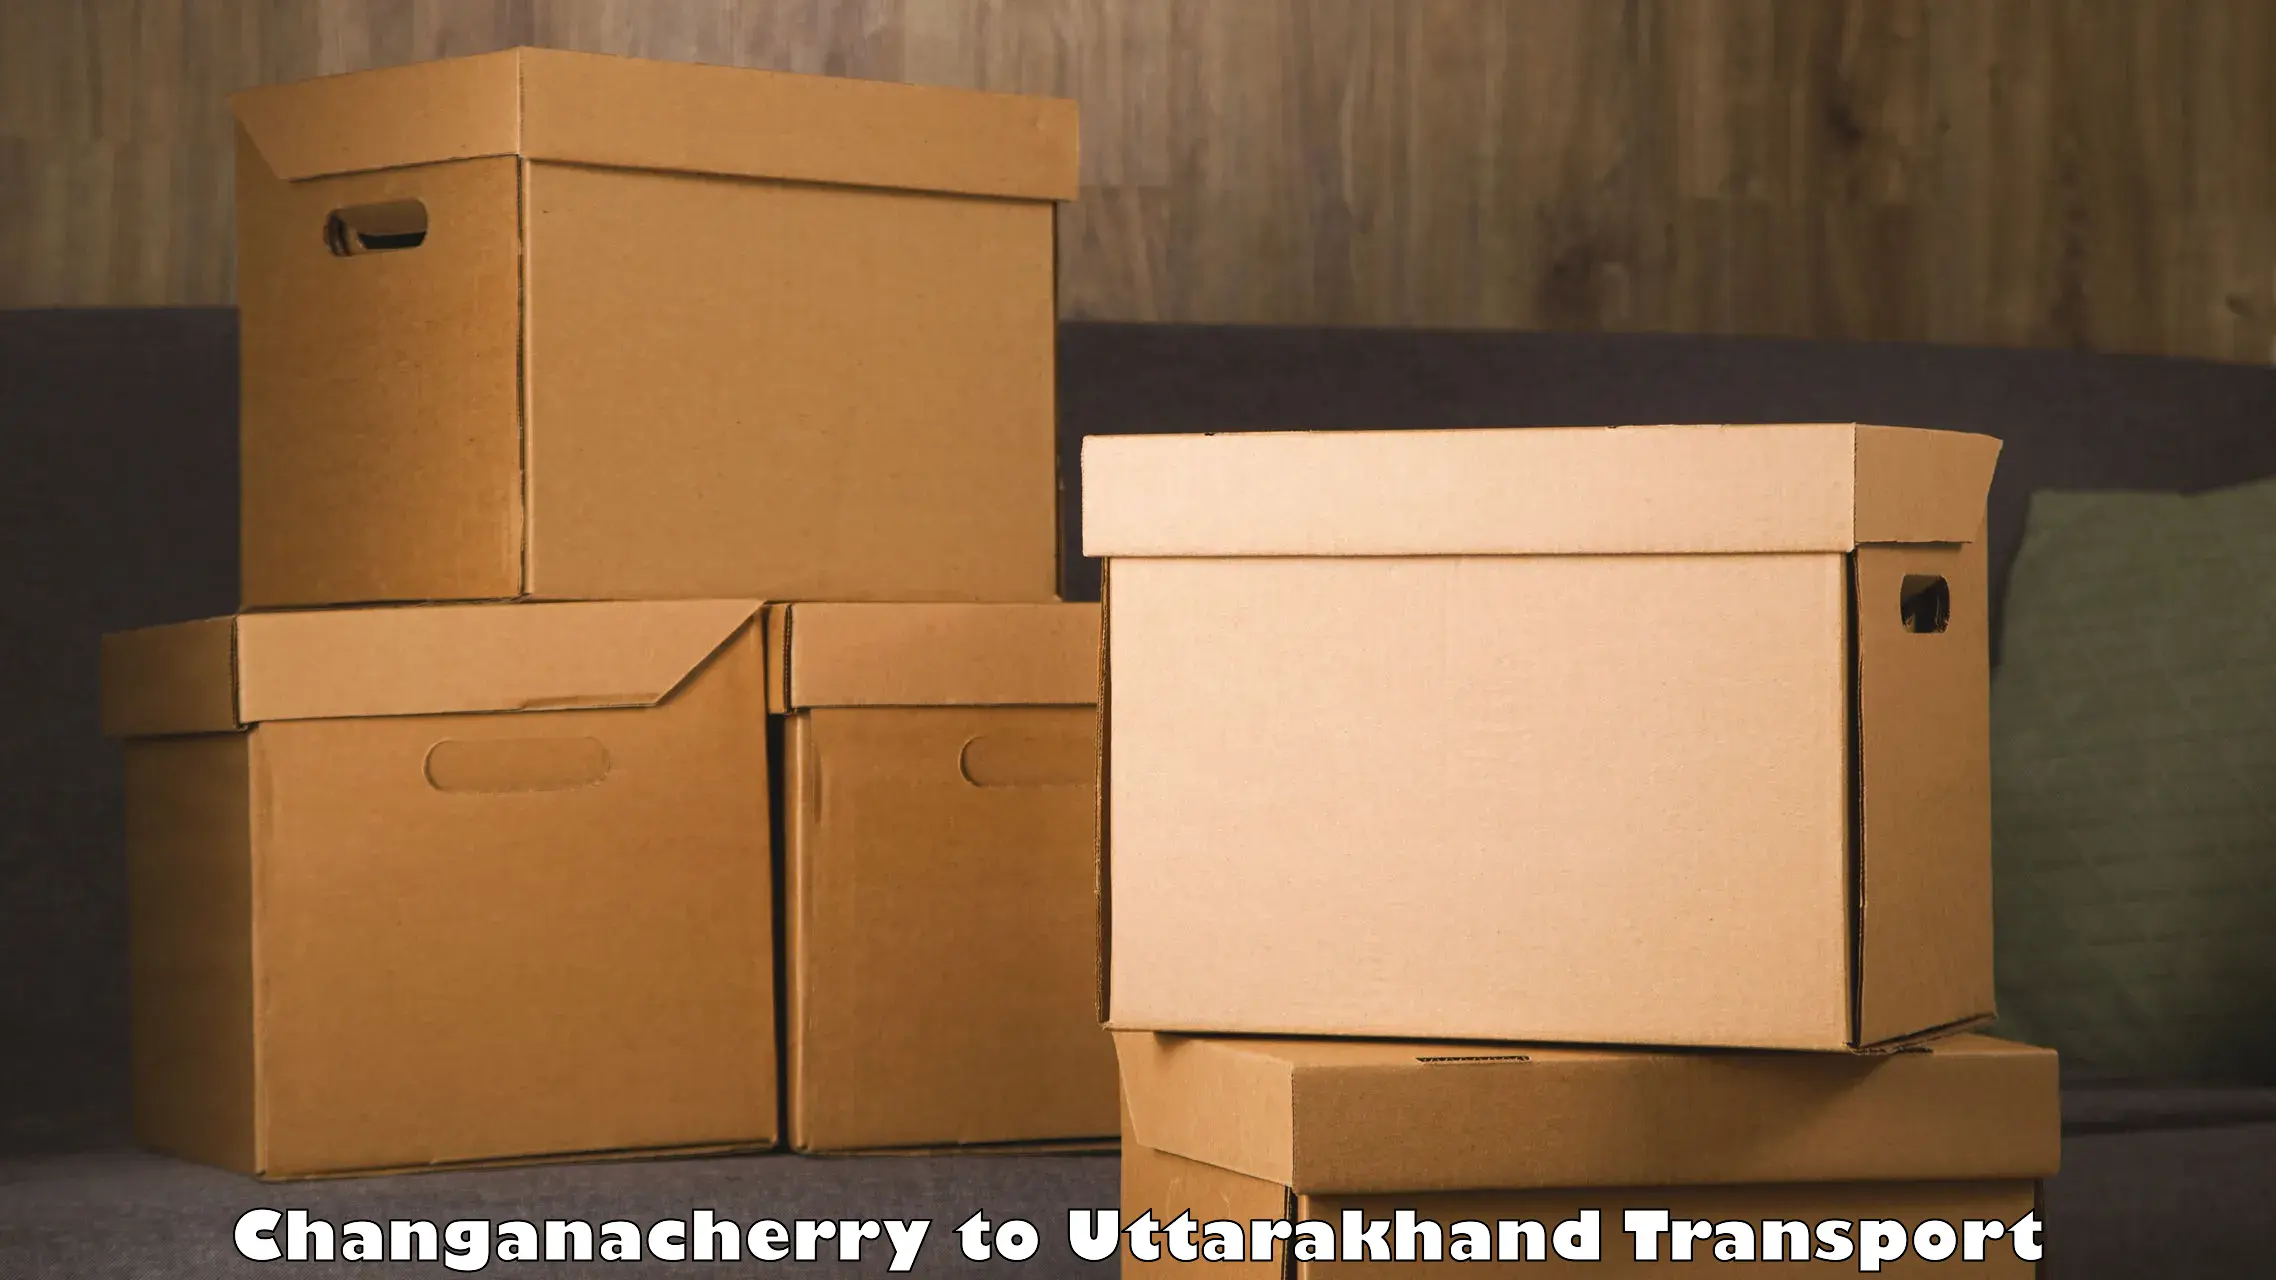 Furniture transport service Changanacherry to Khatima